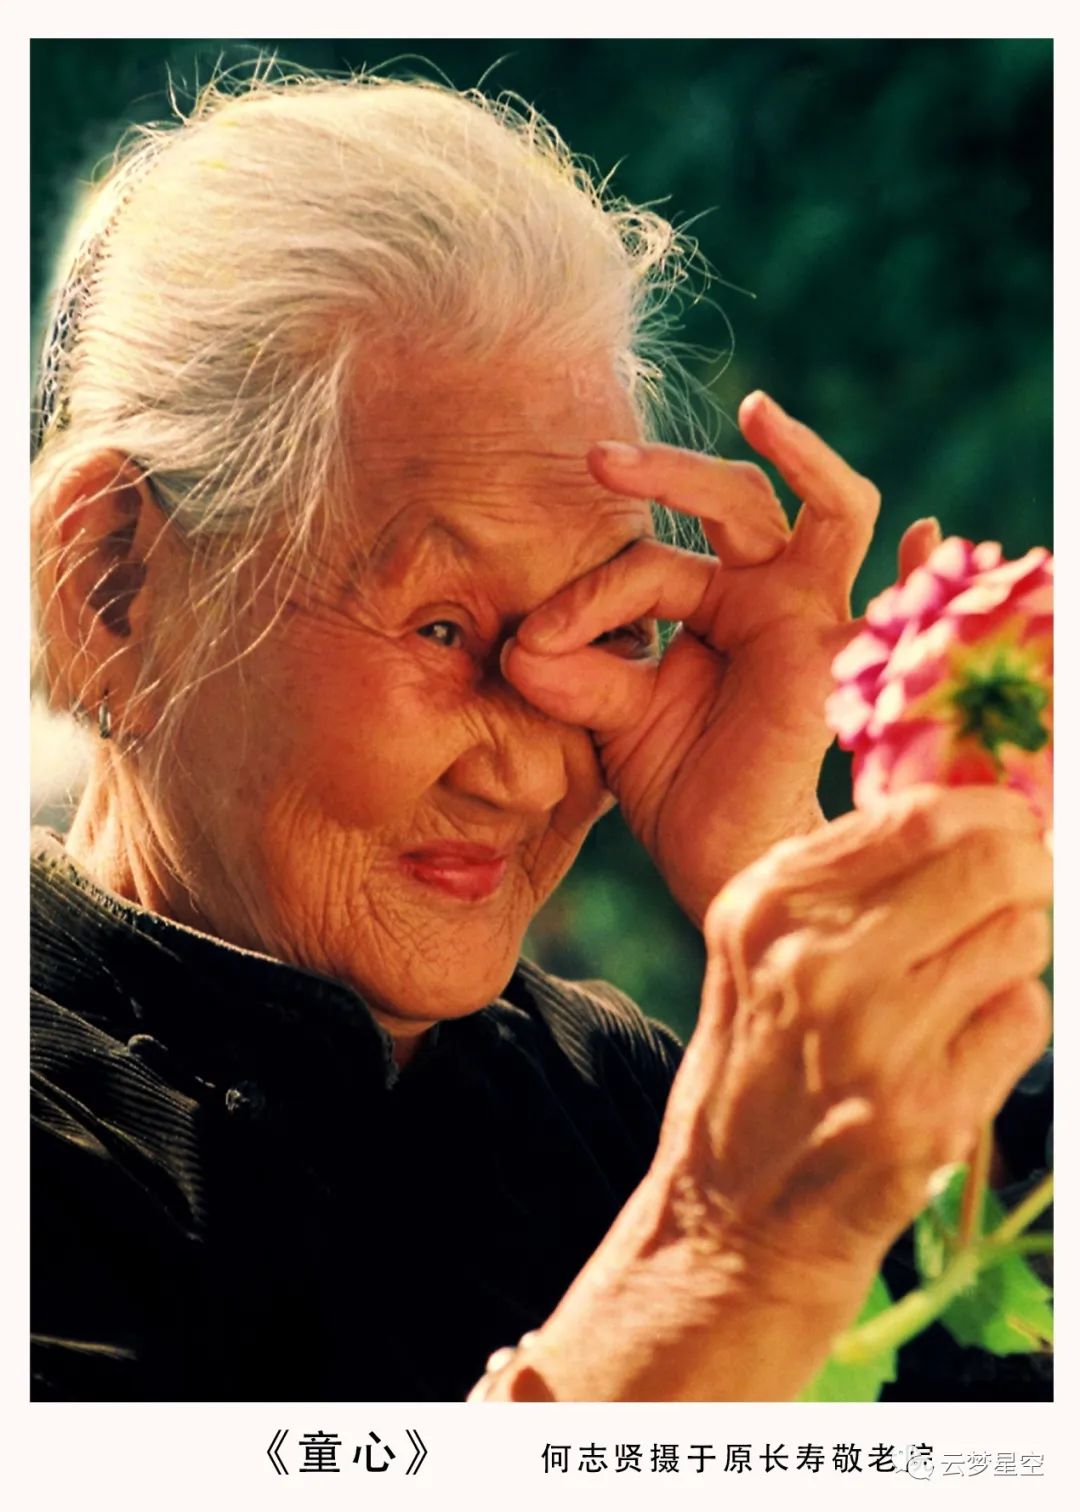 67岳阳百岁老人照片走进世界妇女大会